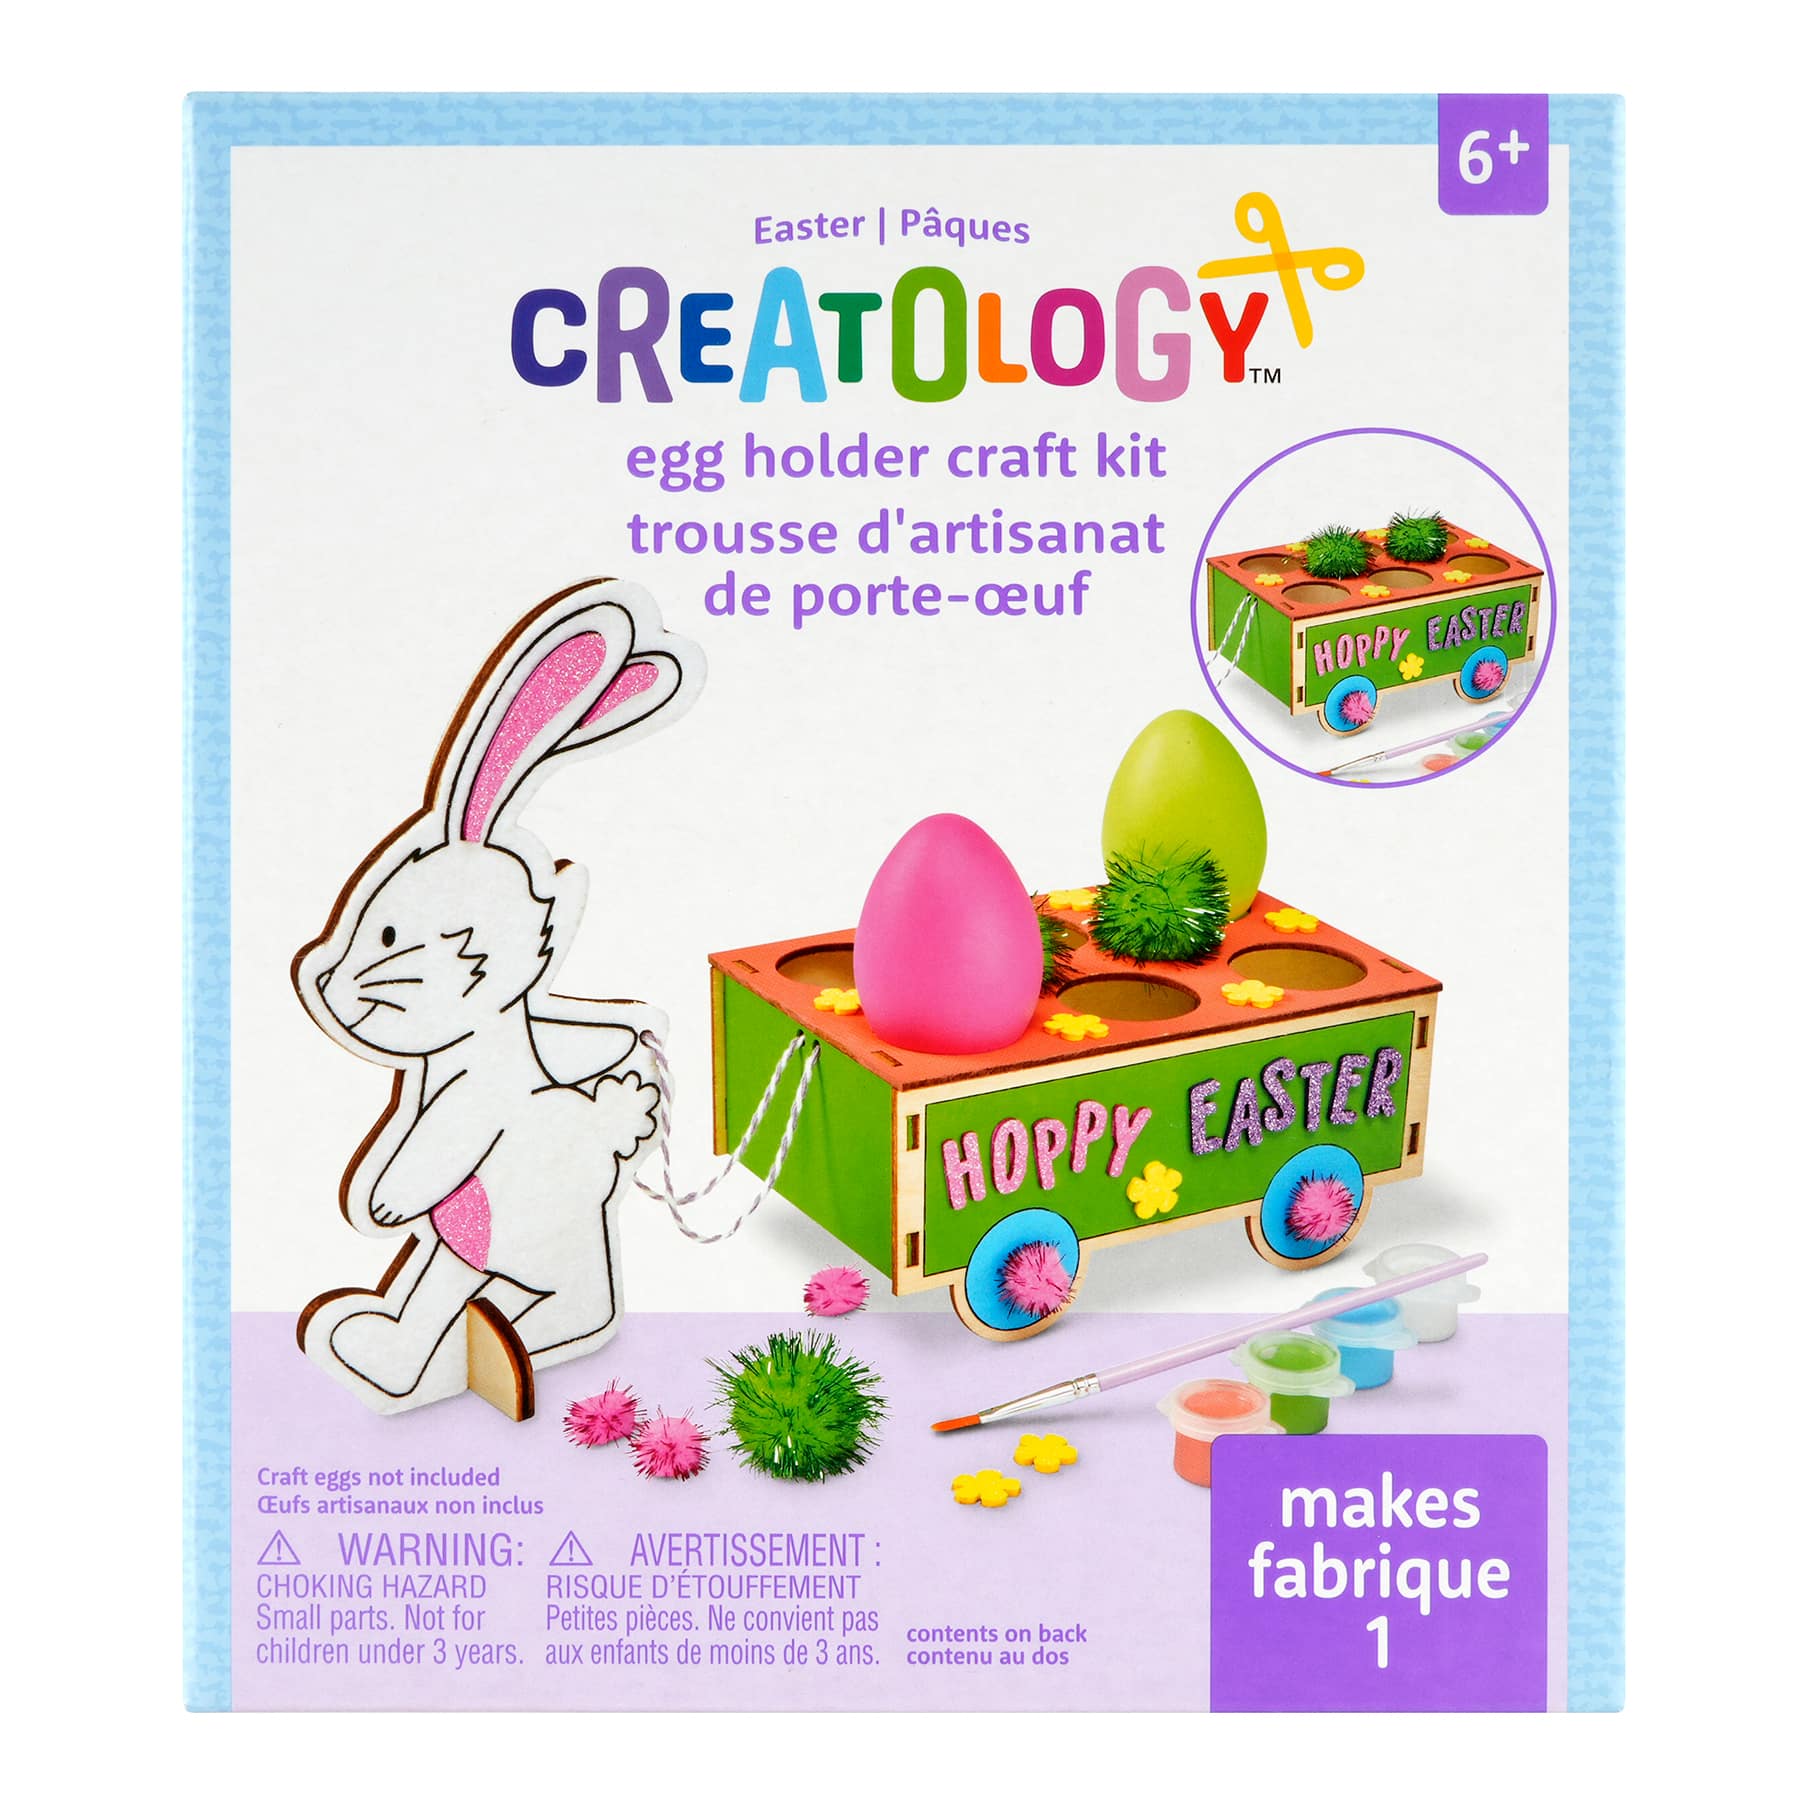 Sinmoe 12 Sets Easter Painting Kit for Kids Unpainted DIY Ceramic Figu –  WoodArtSupply